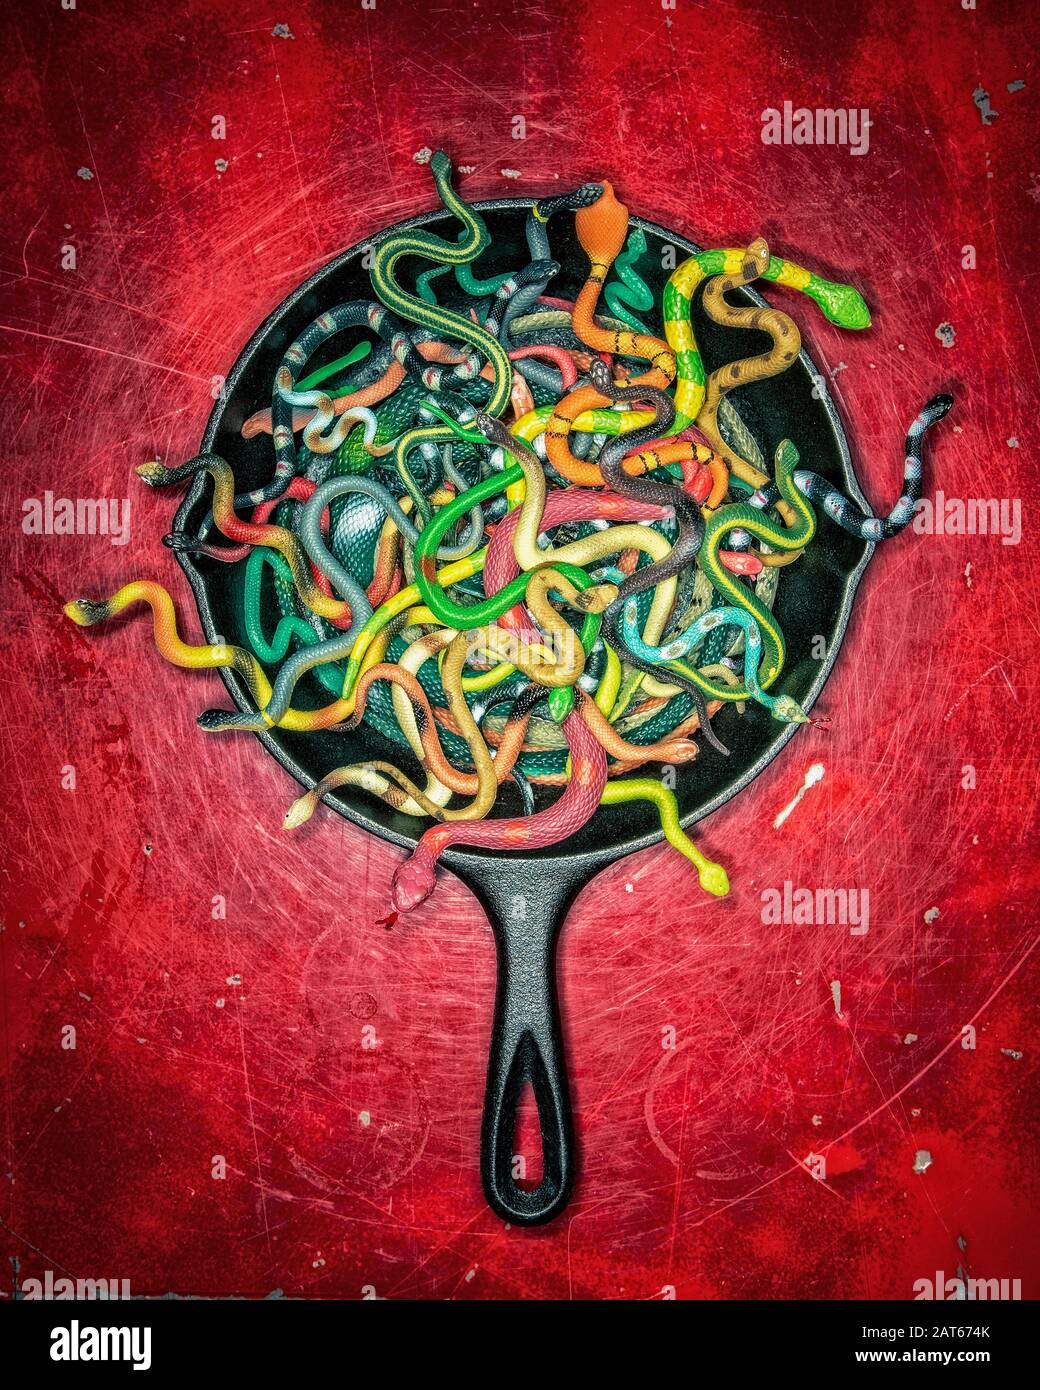 Una moltitudine di serpenti colorati di gomma che squirming in una padella di ferro contro uno sfondo rosso profondo Foto Stock